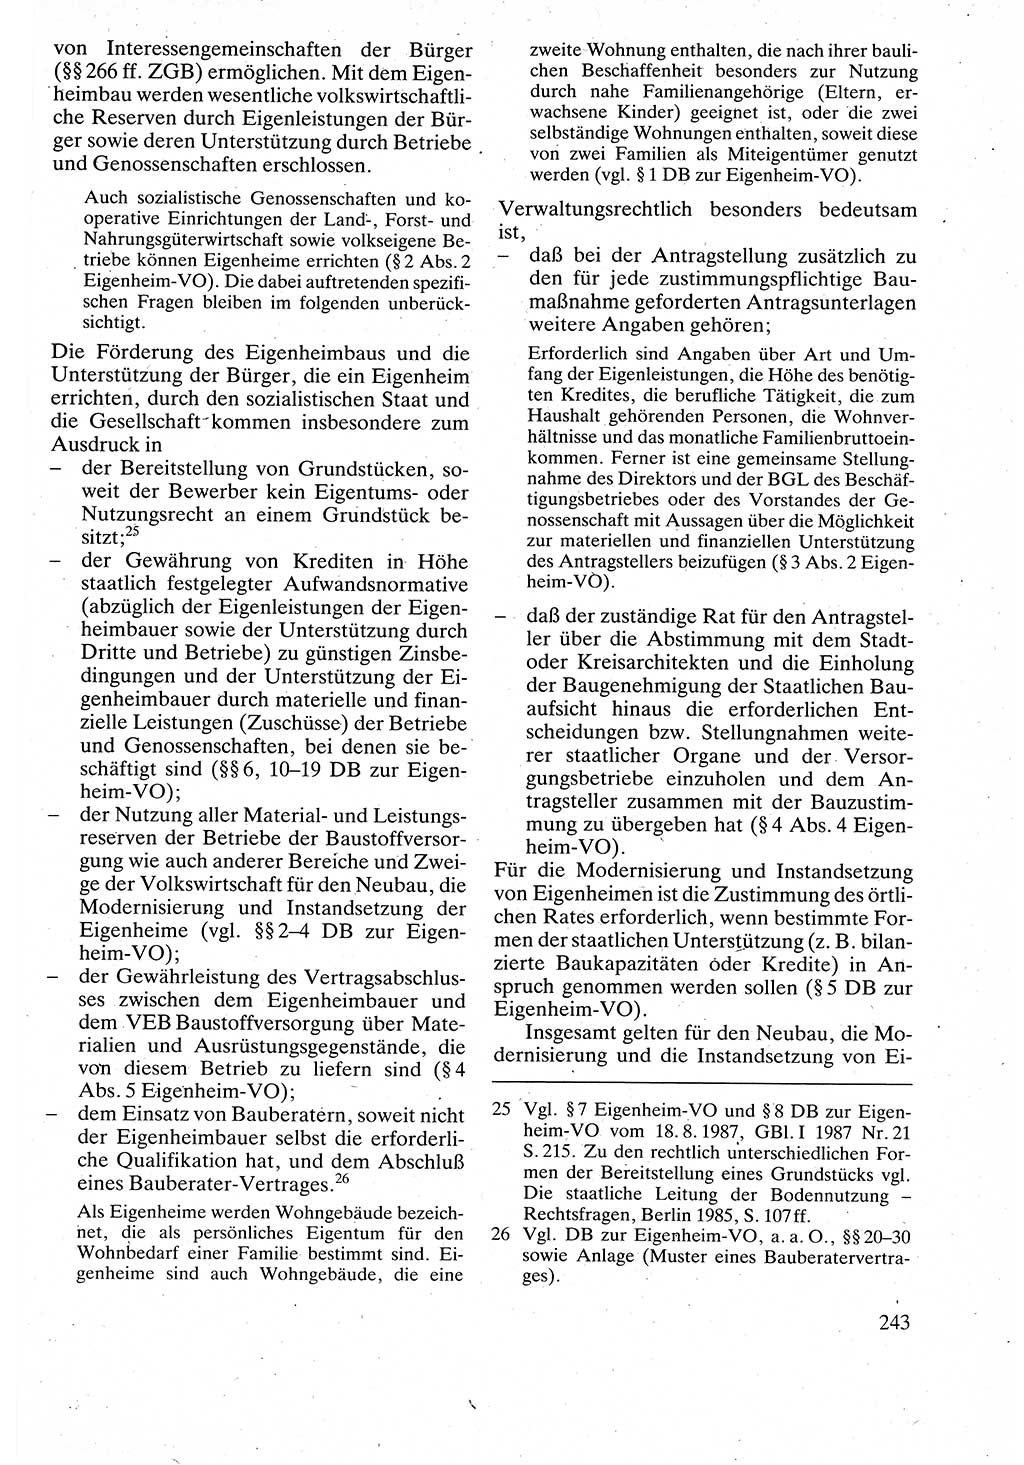 Verwaltungsrecht [Deutsche Demokratische Republik (DDR)], Lehrbuch 1988, Seite 243 (Verw.-R. DDR Lb. 1988, S. 243)